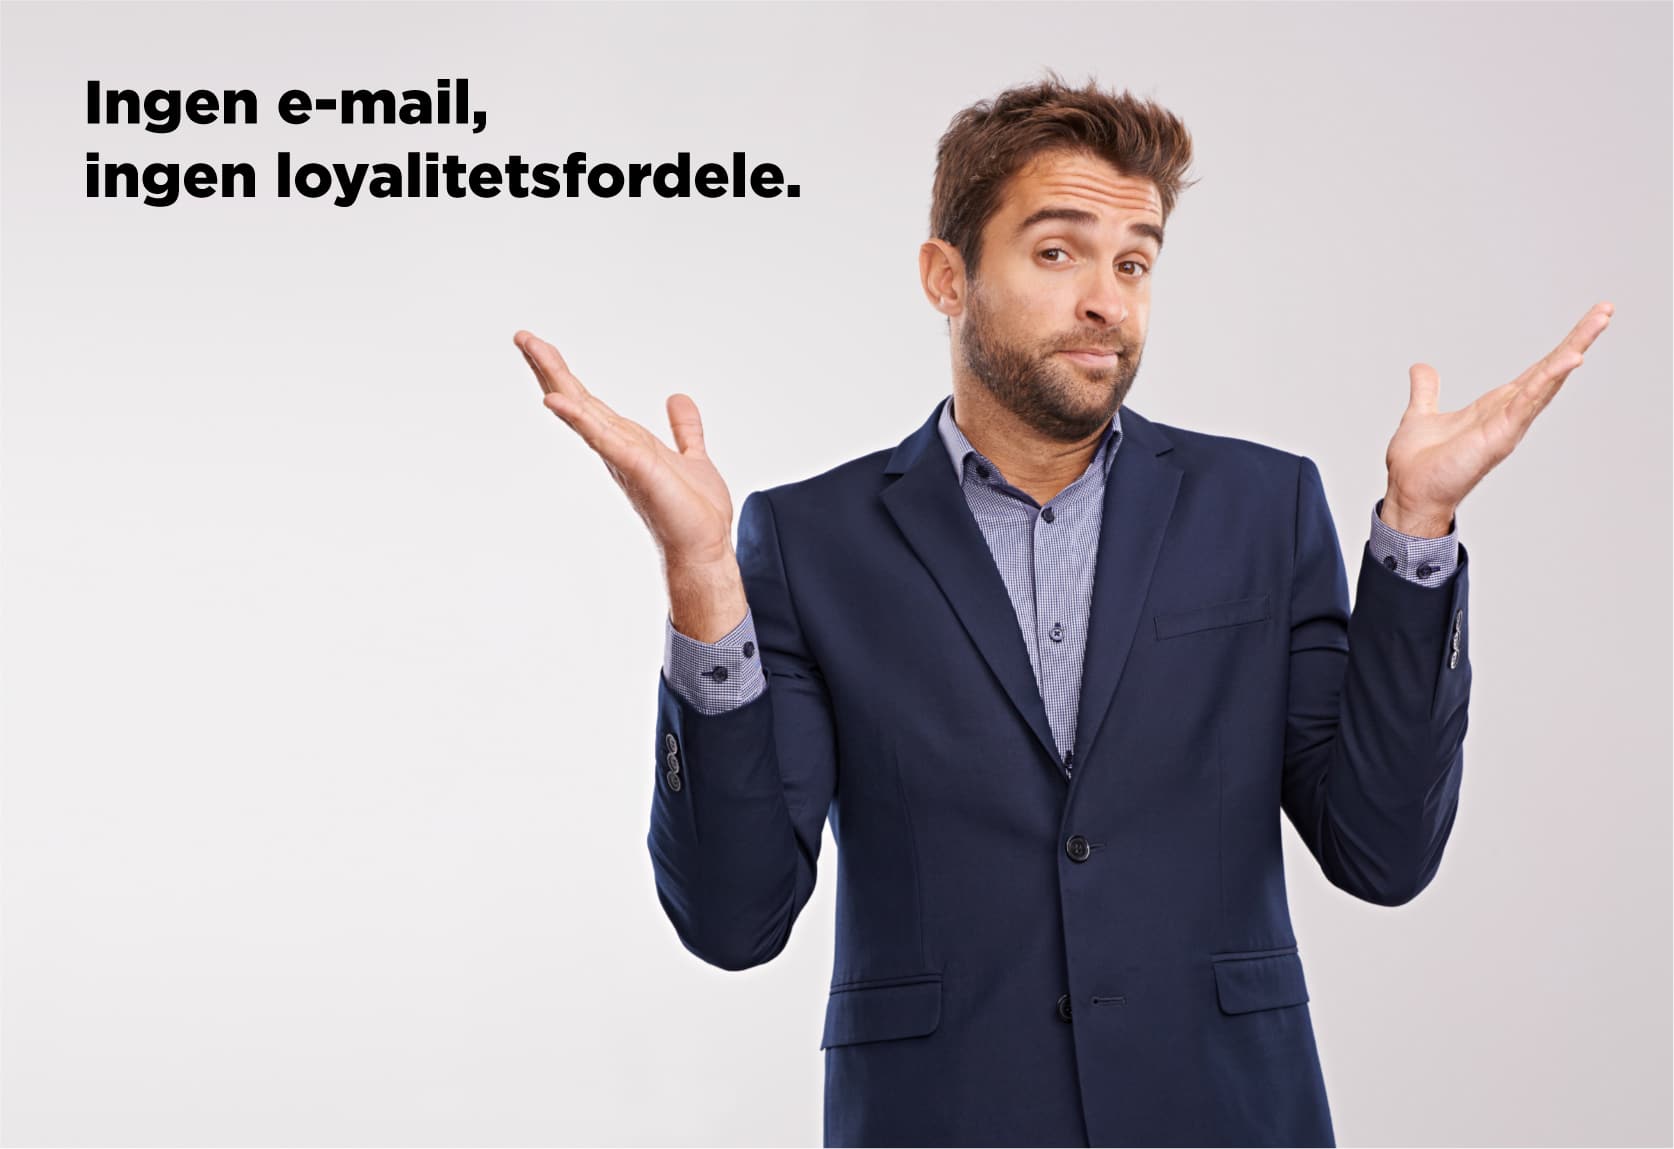 Blogindlæg om hvorfor vi skal aflevere vores e-mail adresse for at blive opfattet som loyal?